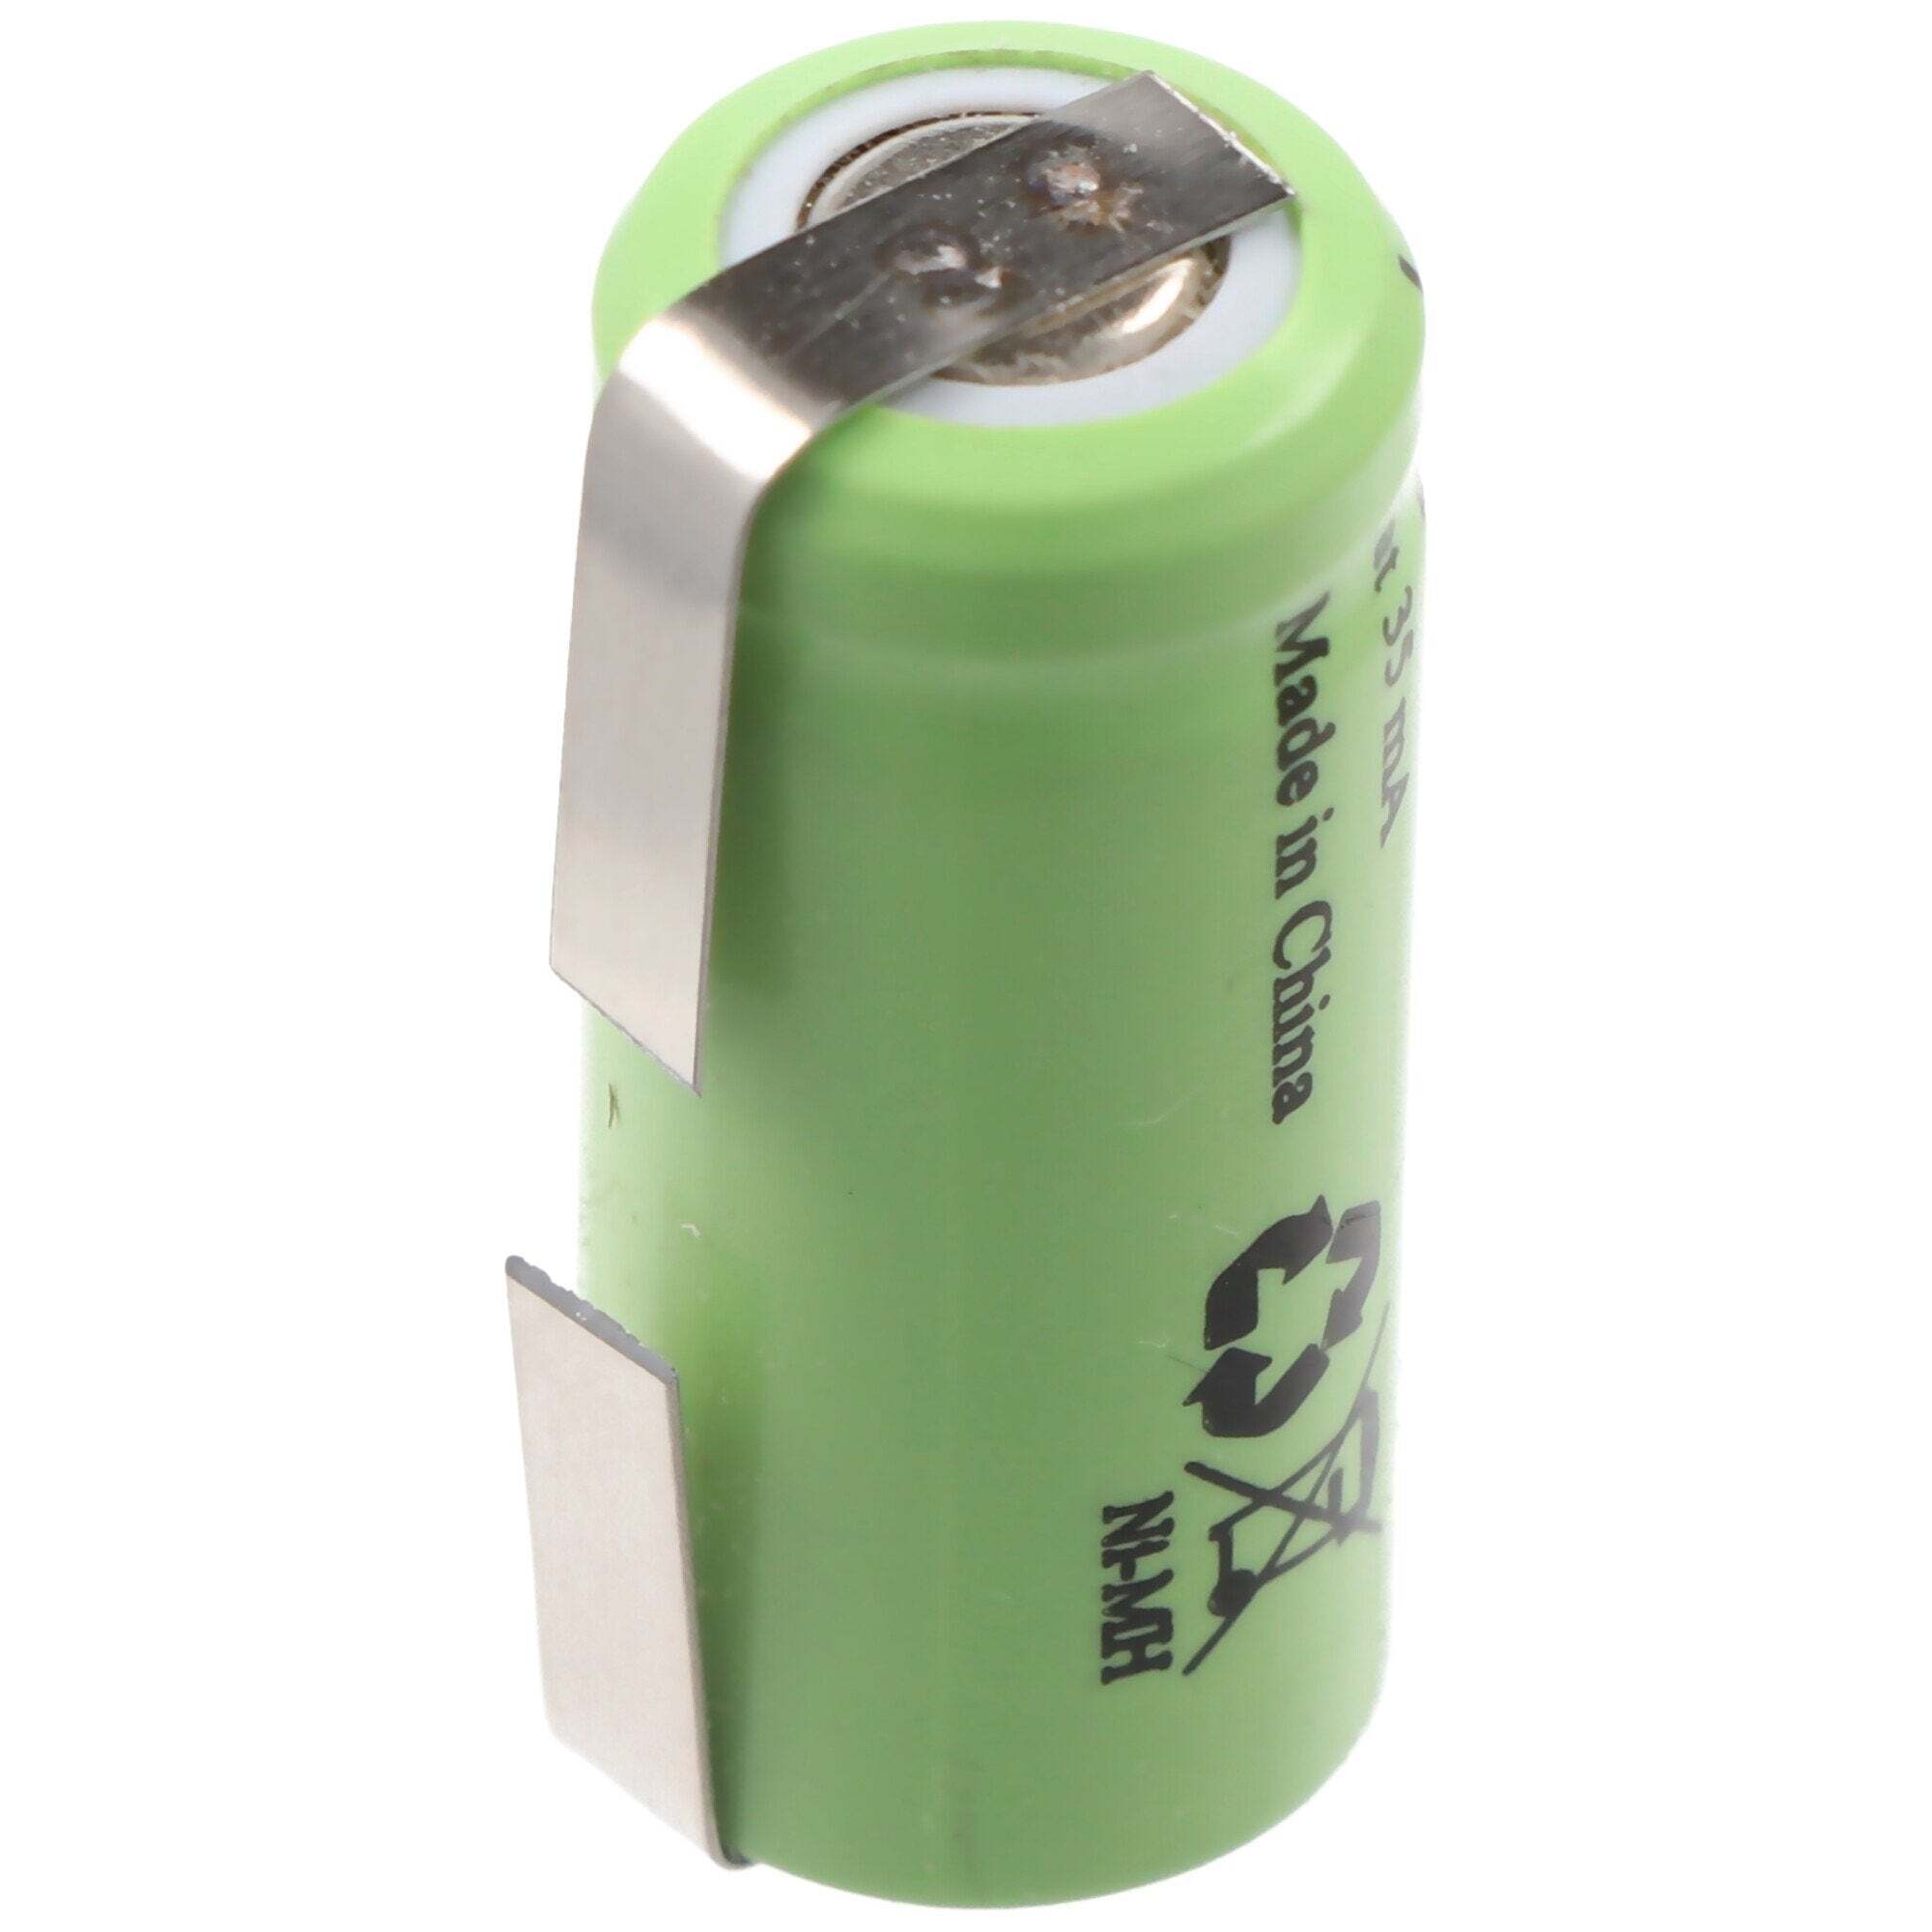 ACCUCELL GP GP35AAAH NiMH maat 1 / 2AAA batterij met U-vormige soldeerlip, niet meer leverbaar, wel een alter